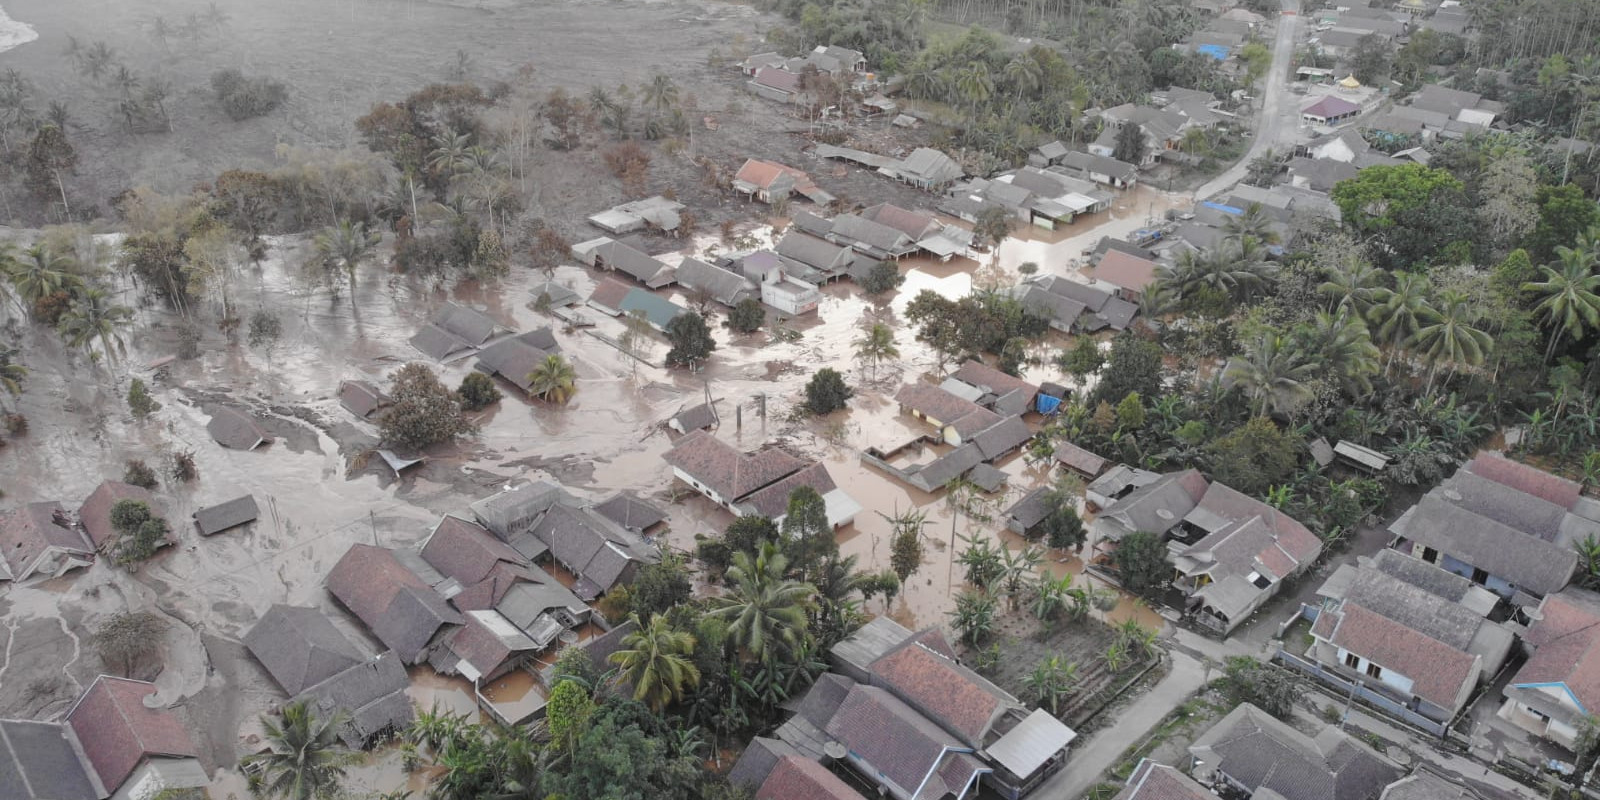 [Update]: Sepekan Upaya Pencarian dan Pertolongan, Tim Gabungan Temukan Total 45 Korban Jiwa Erupsi Gunung Semeru